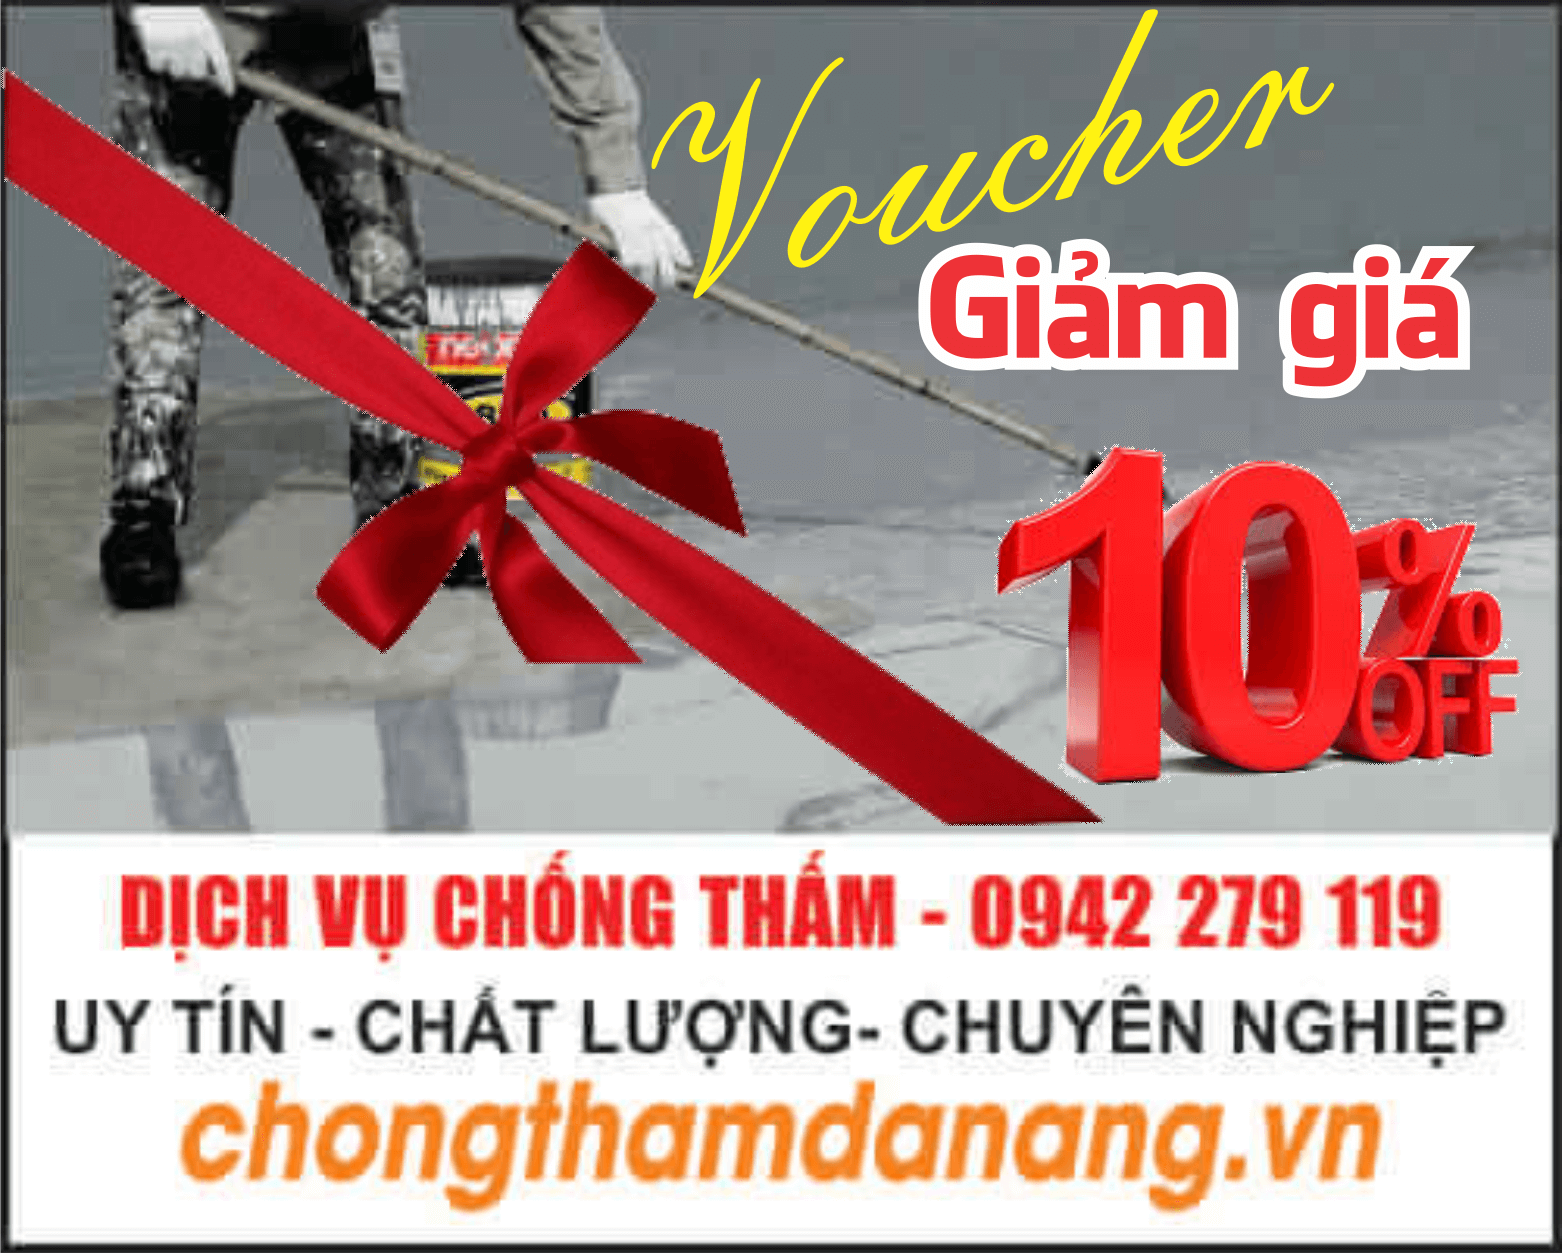 Dịch vụ thi công chống thấm tại Đà Nẵng - Voucher Giảm Giá 10%